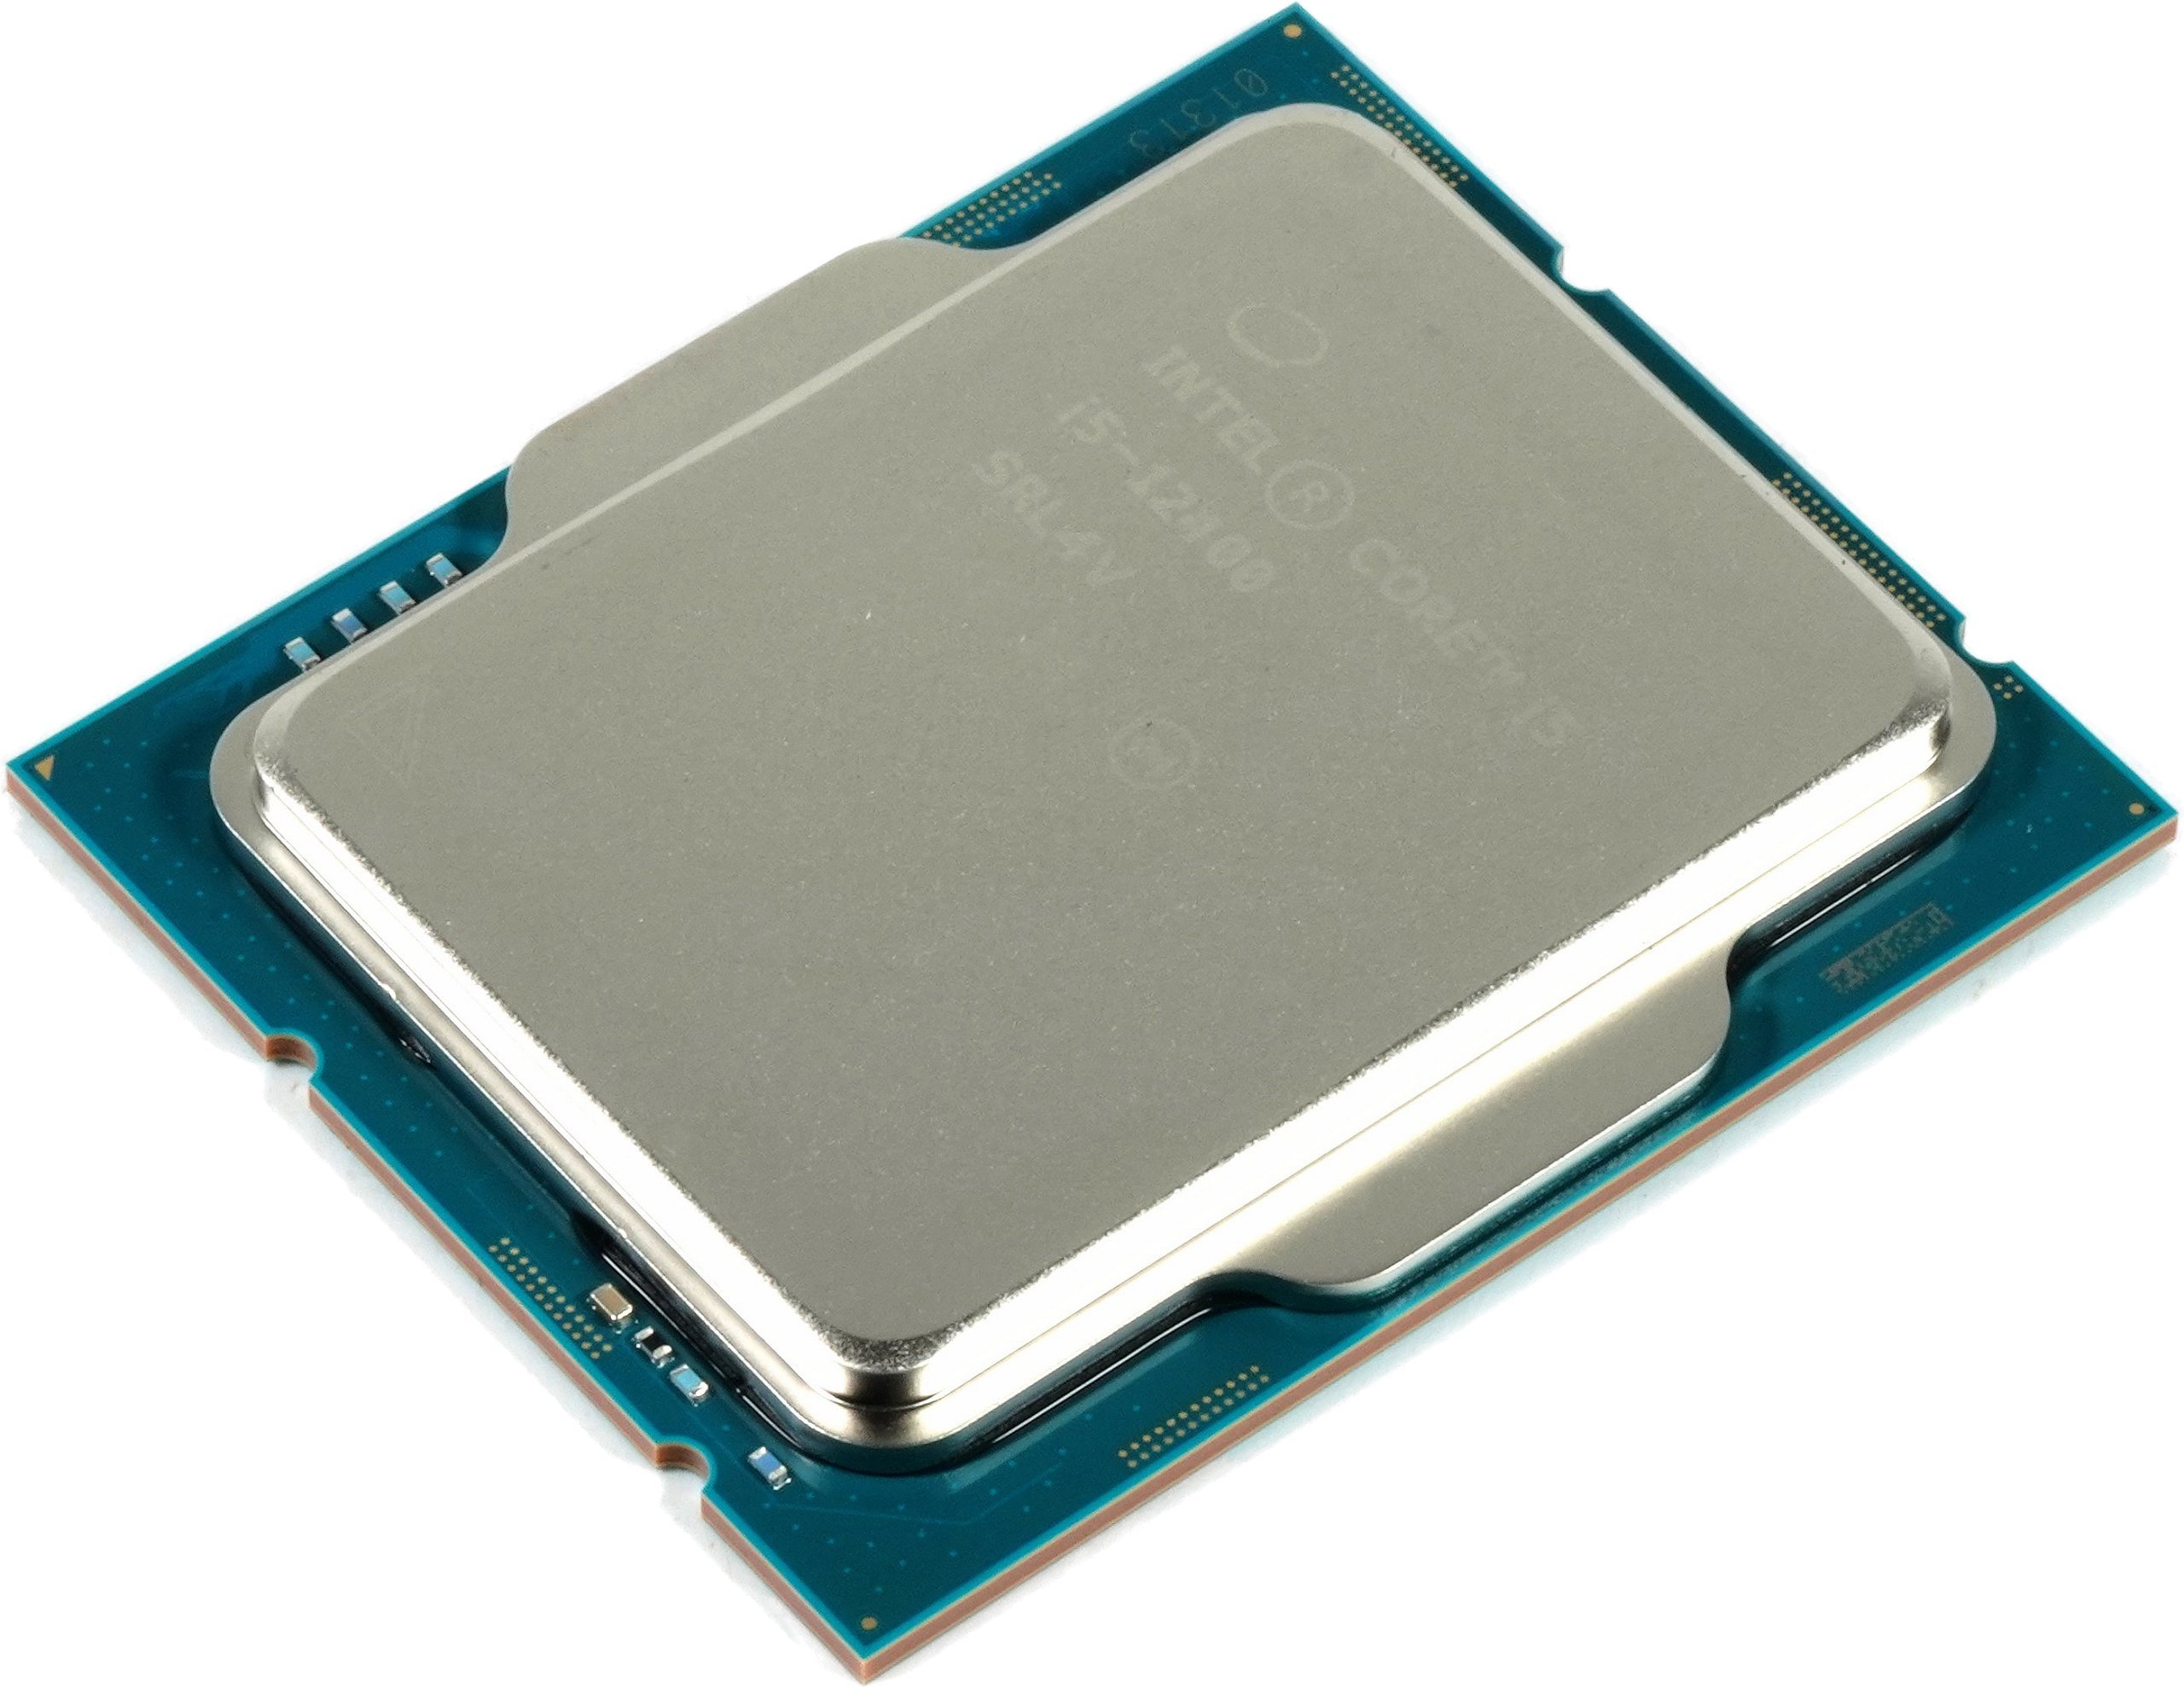 Test De L'Intel Core I5-12400 : Idéal Pour Le Jeu à Prix Modéré - Pause  Hardware